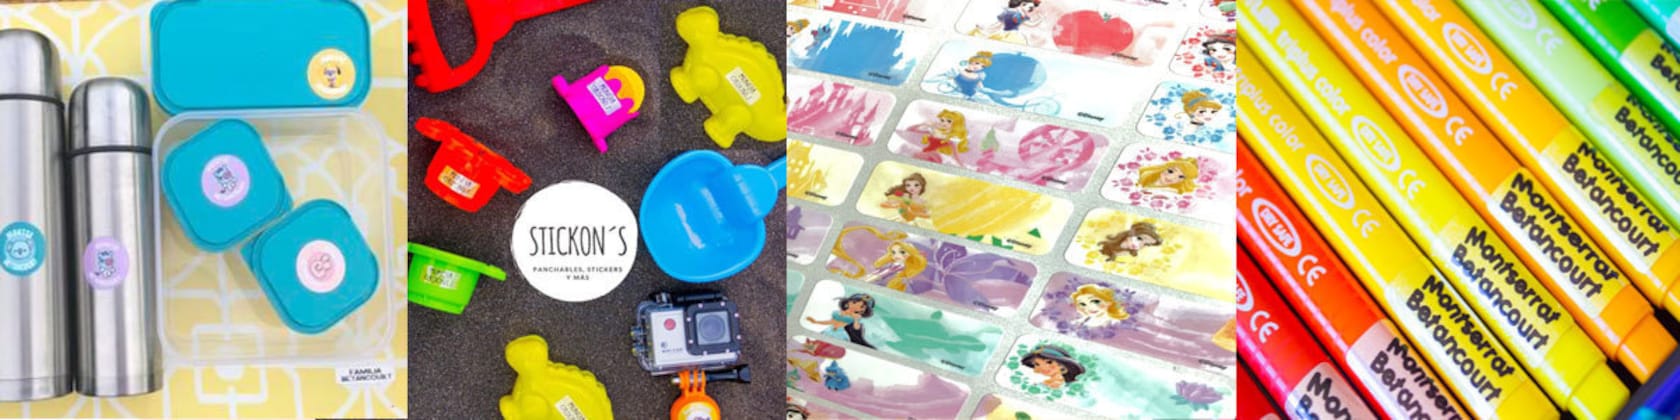 Stickerkid: le must des étiquettes personnalisables pour enfants